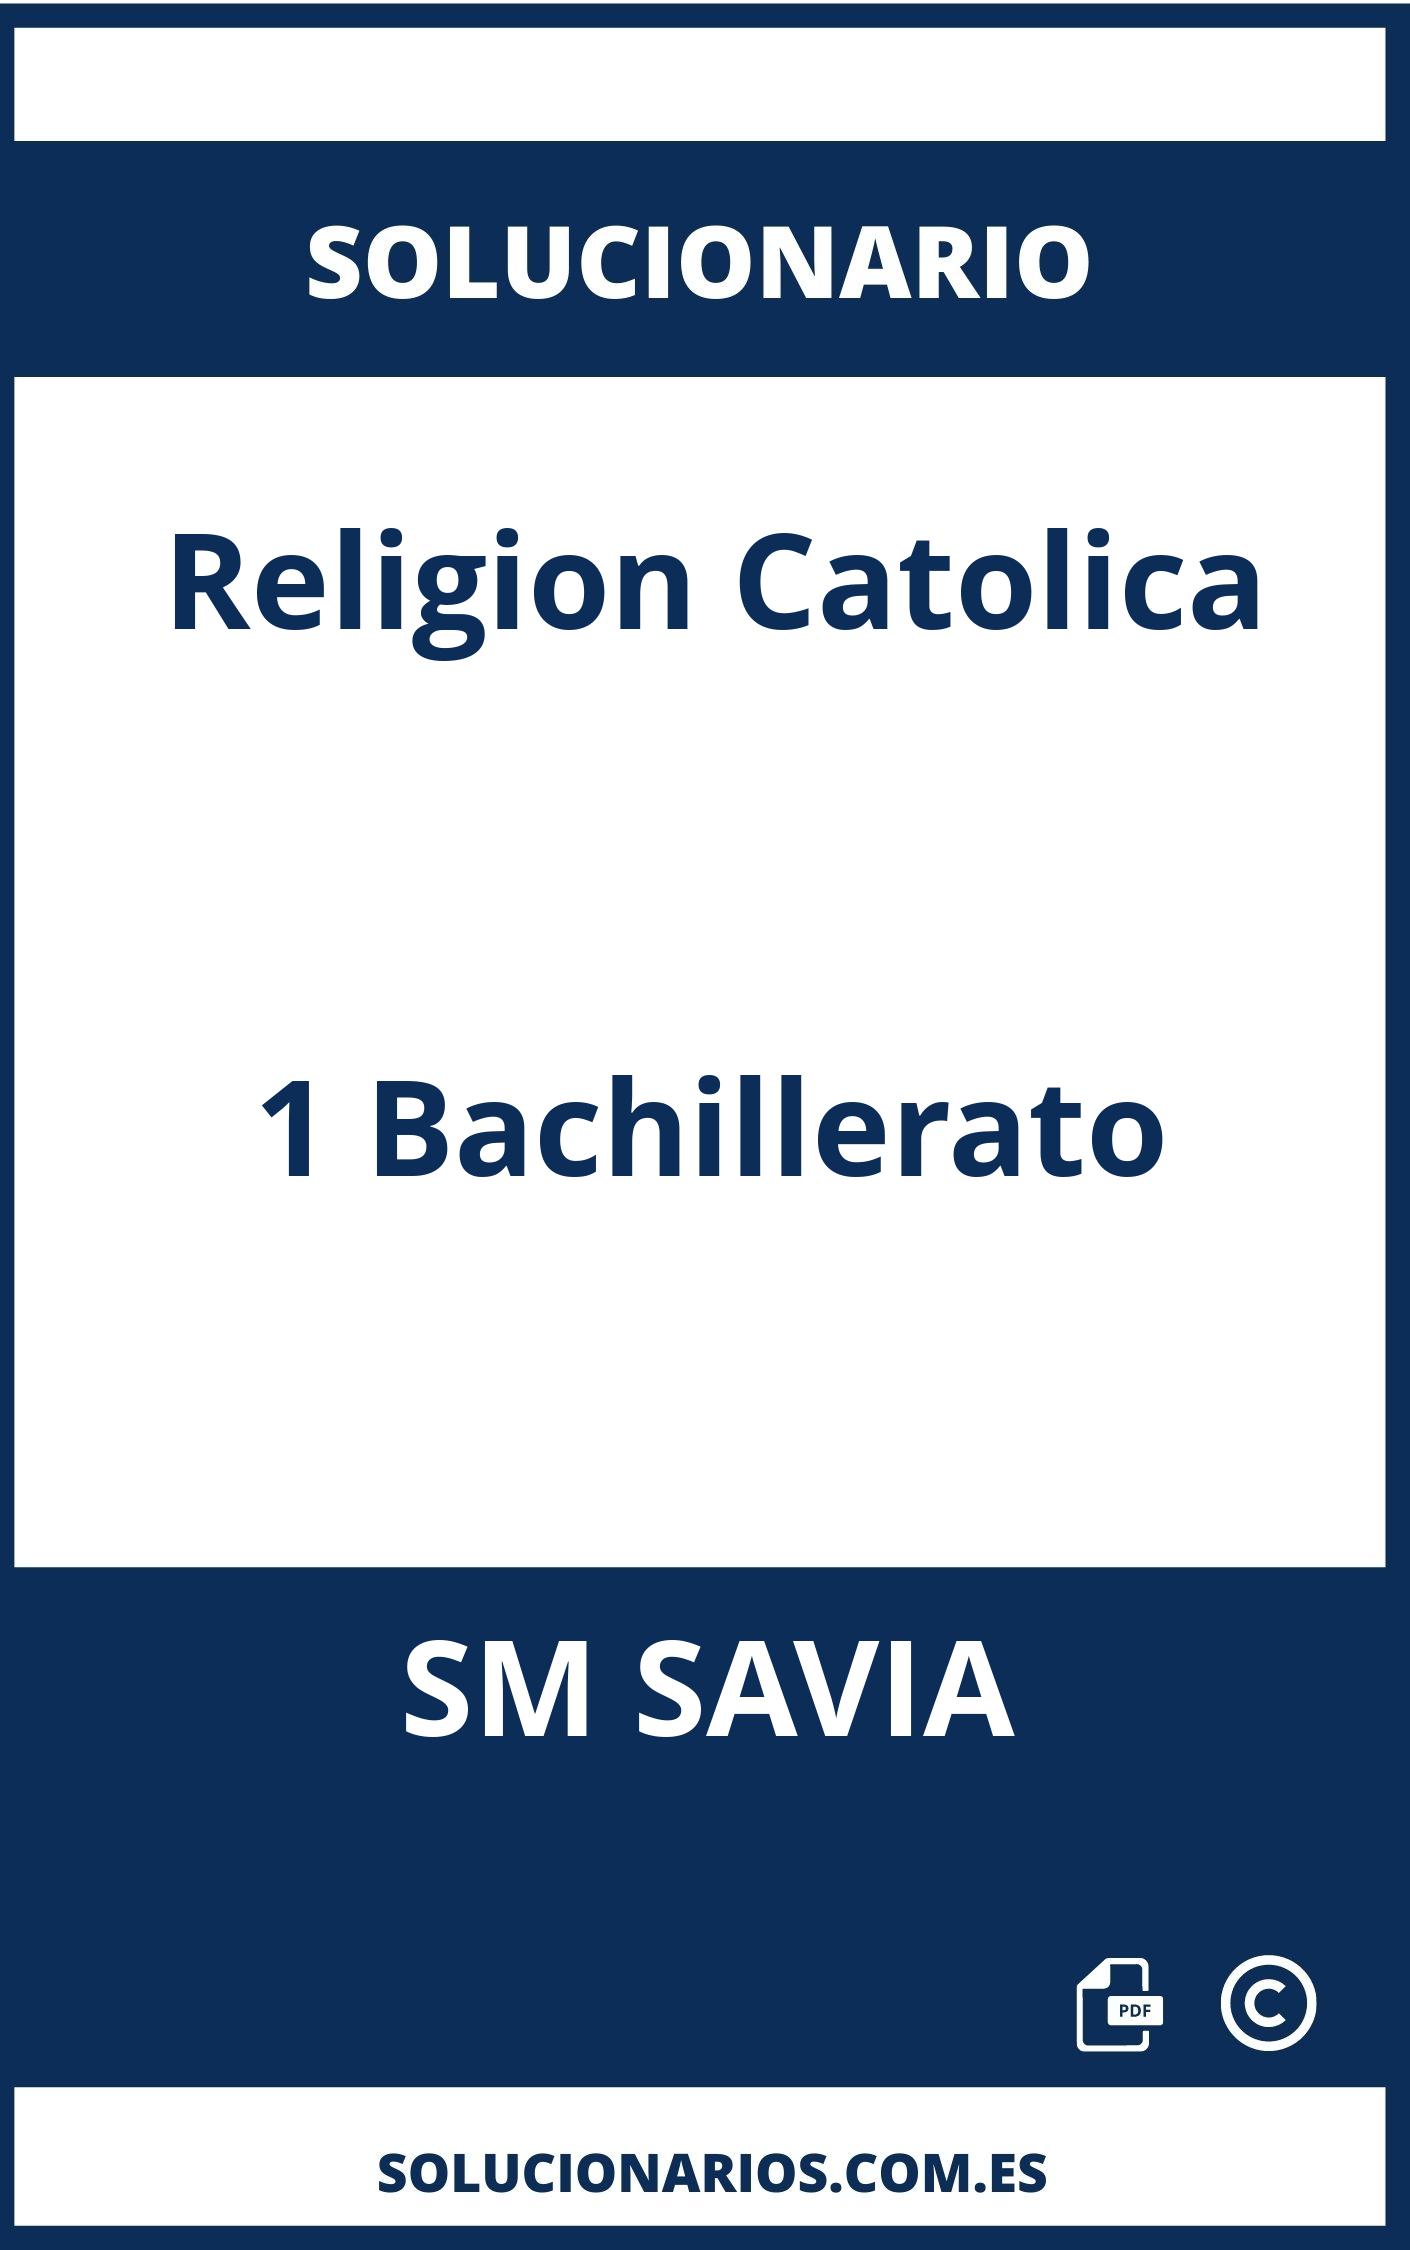 Solucionario Religion Catolica 1 Bachillerato SM SAVIA